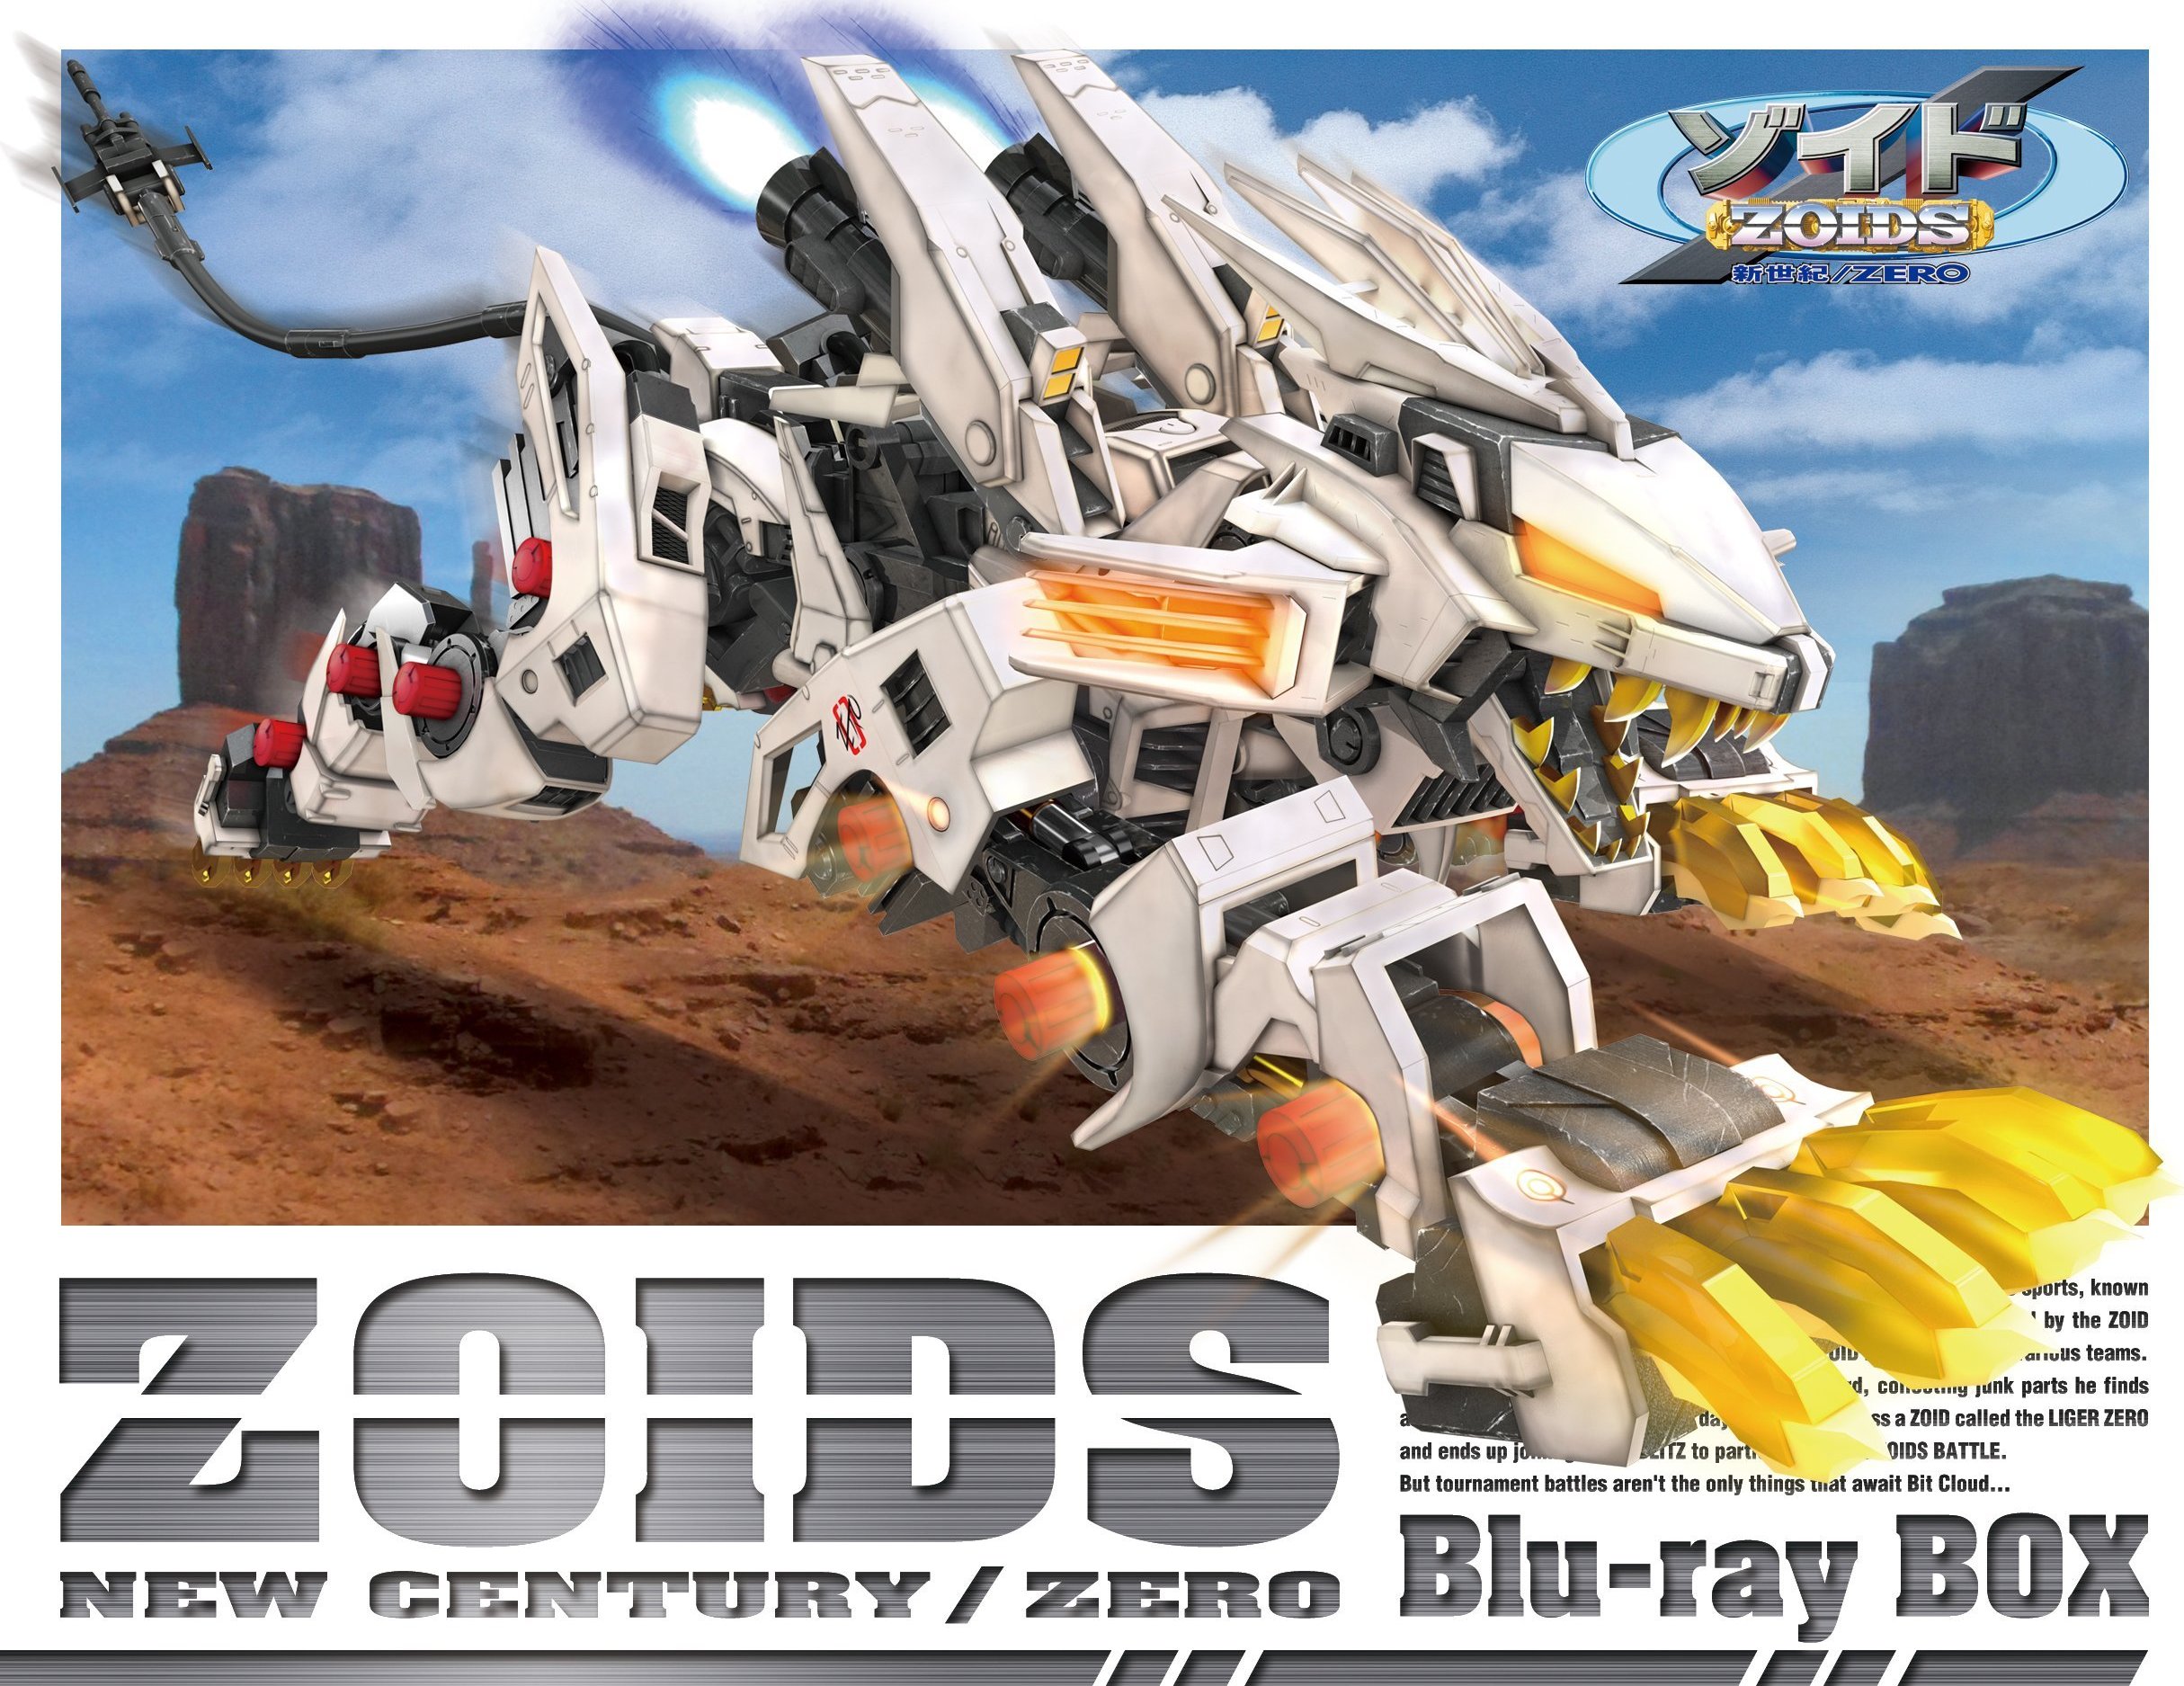 ゾイド新世紀/ZERO Box Blu-ray (Zoids: New Century / Zero) (Japan)